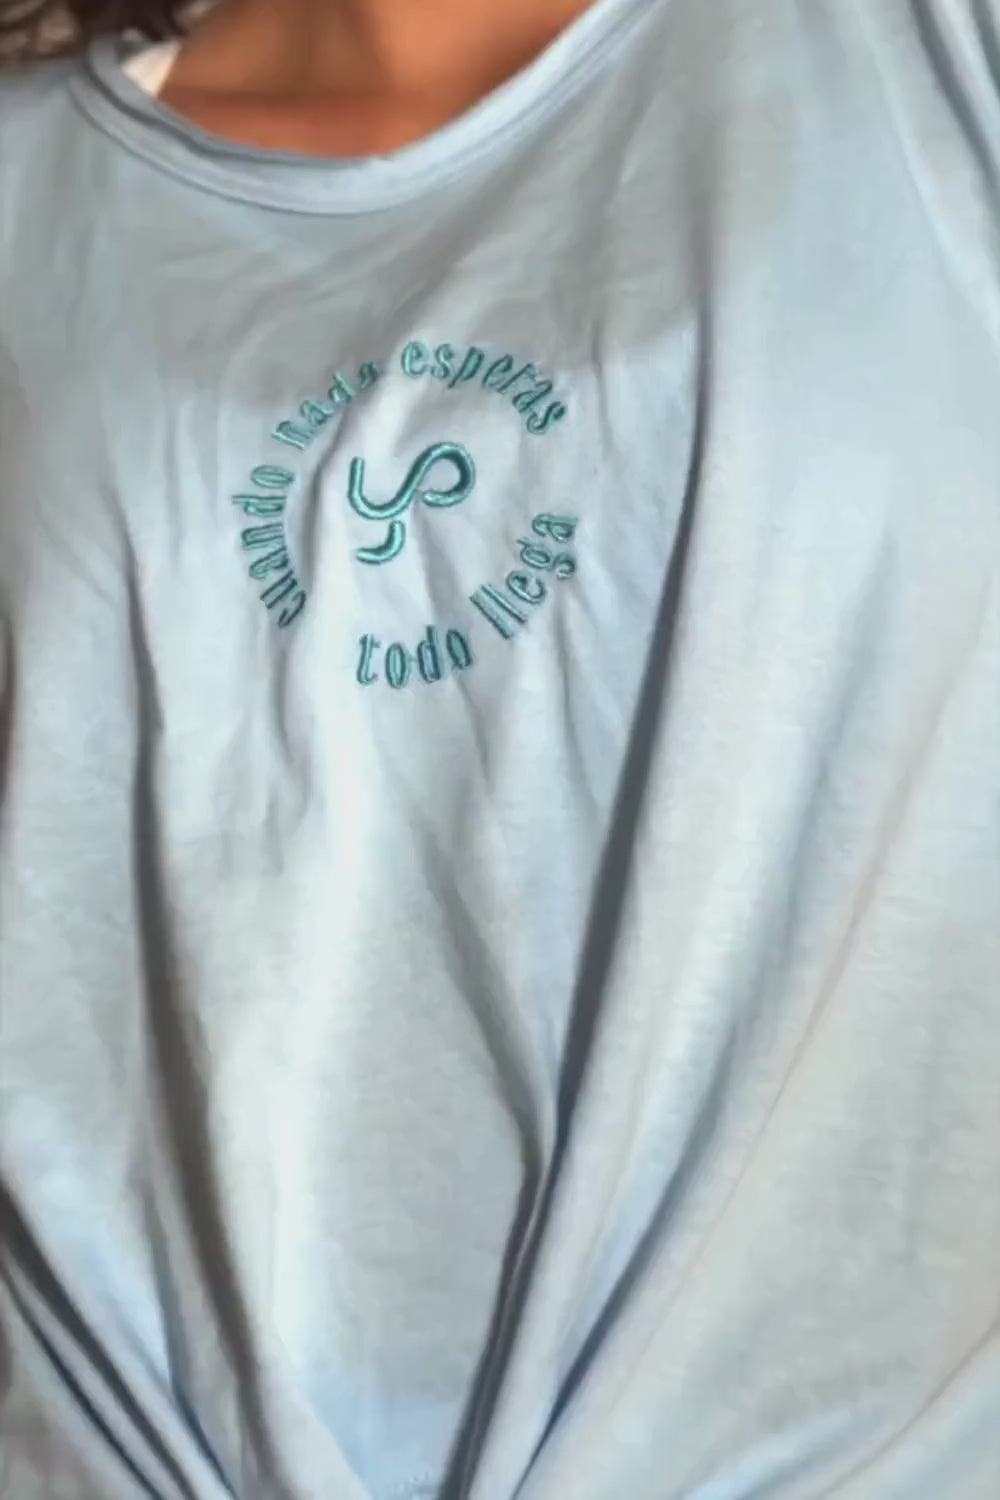 Camiseta Tshirt Comfort con nudo en color celeste Ice Water Yogimi. Camiseta holgada con diseño cómodo y frase bordada "Cuando nada esperas todo llega".